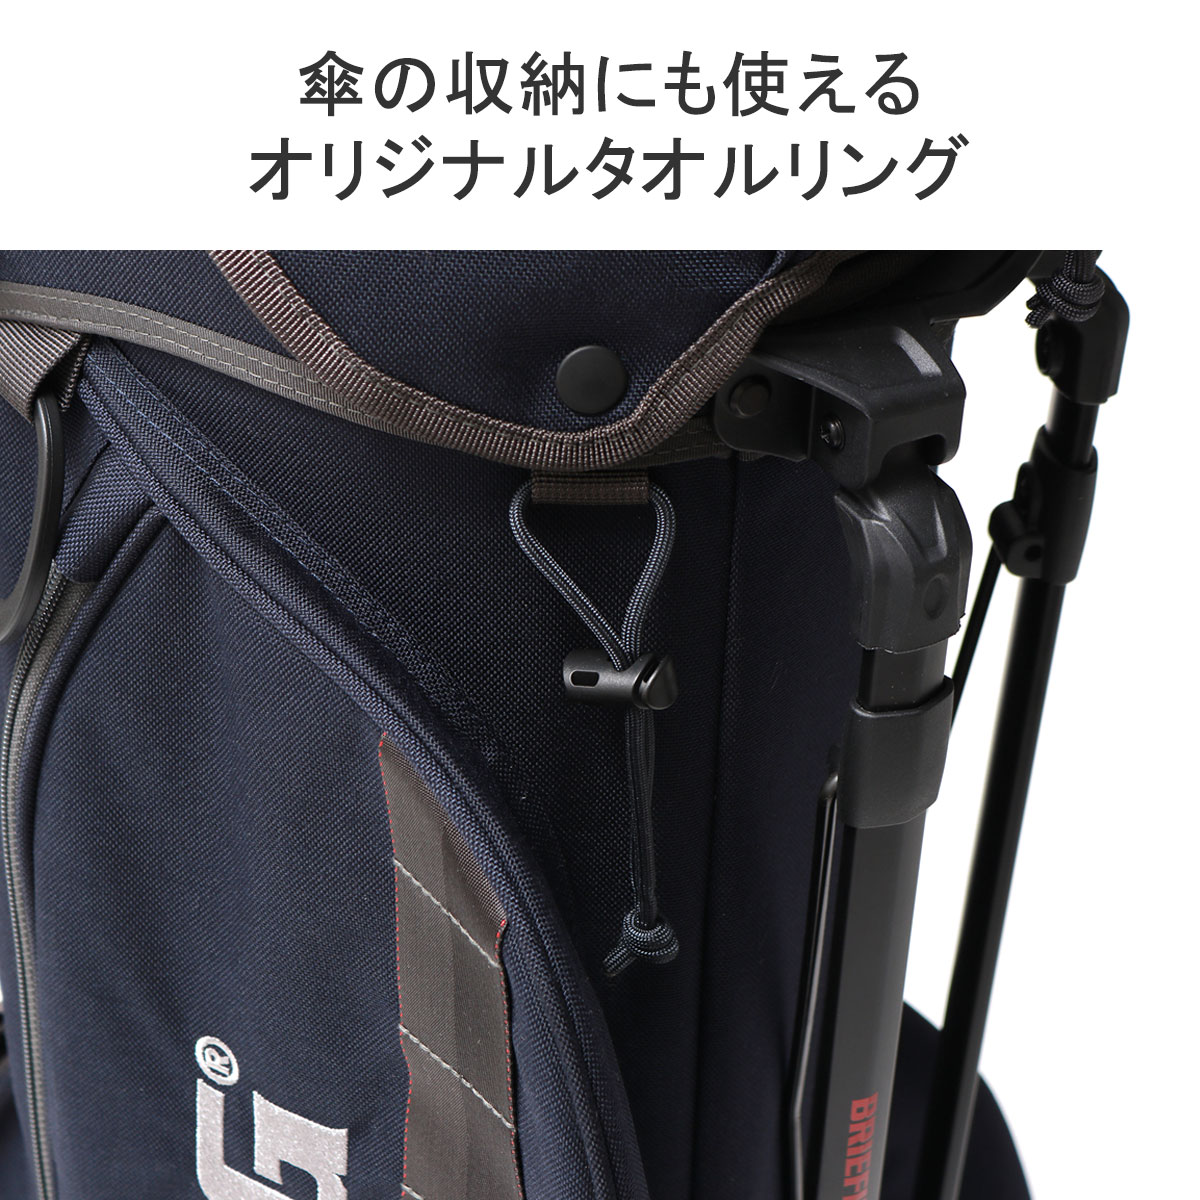 最大36%☆6/11限定 当店限定モデル 日本正規品 ブリーフィング ゴルフ 